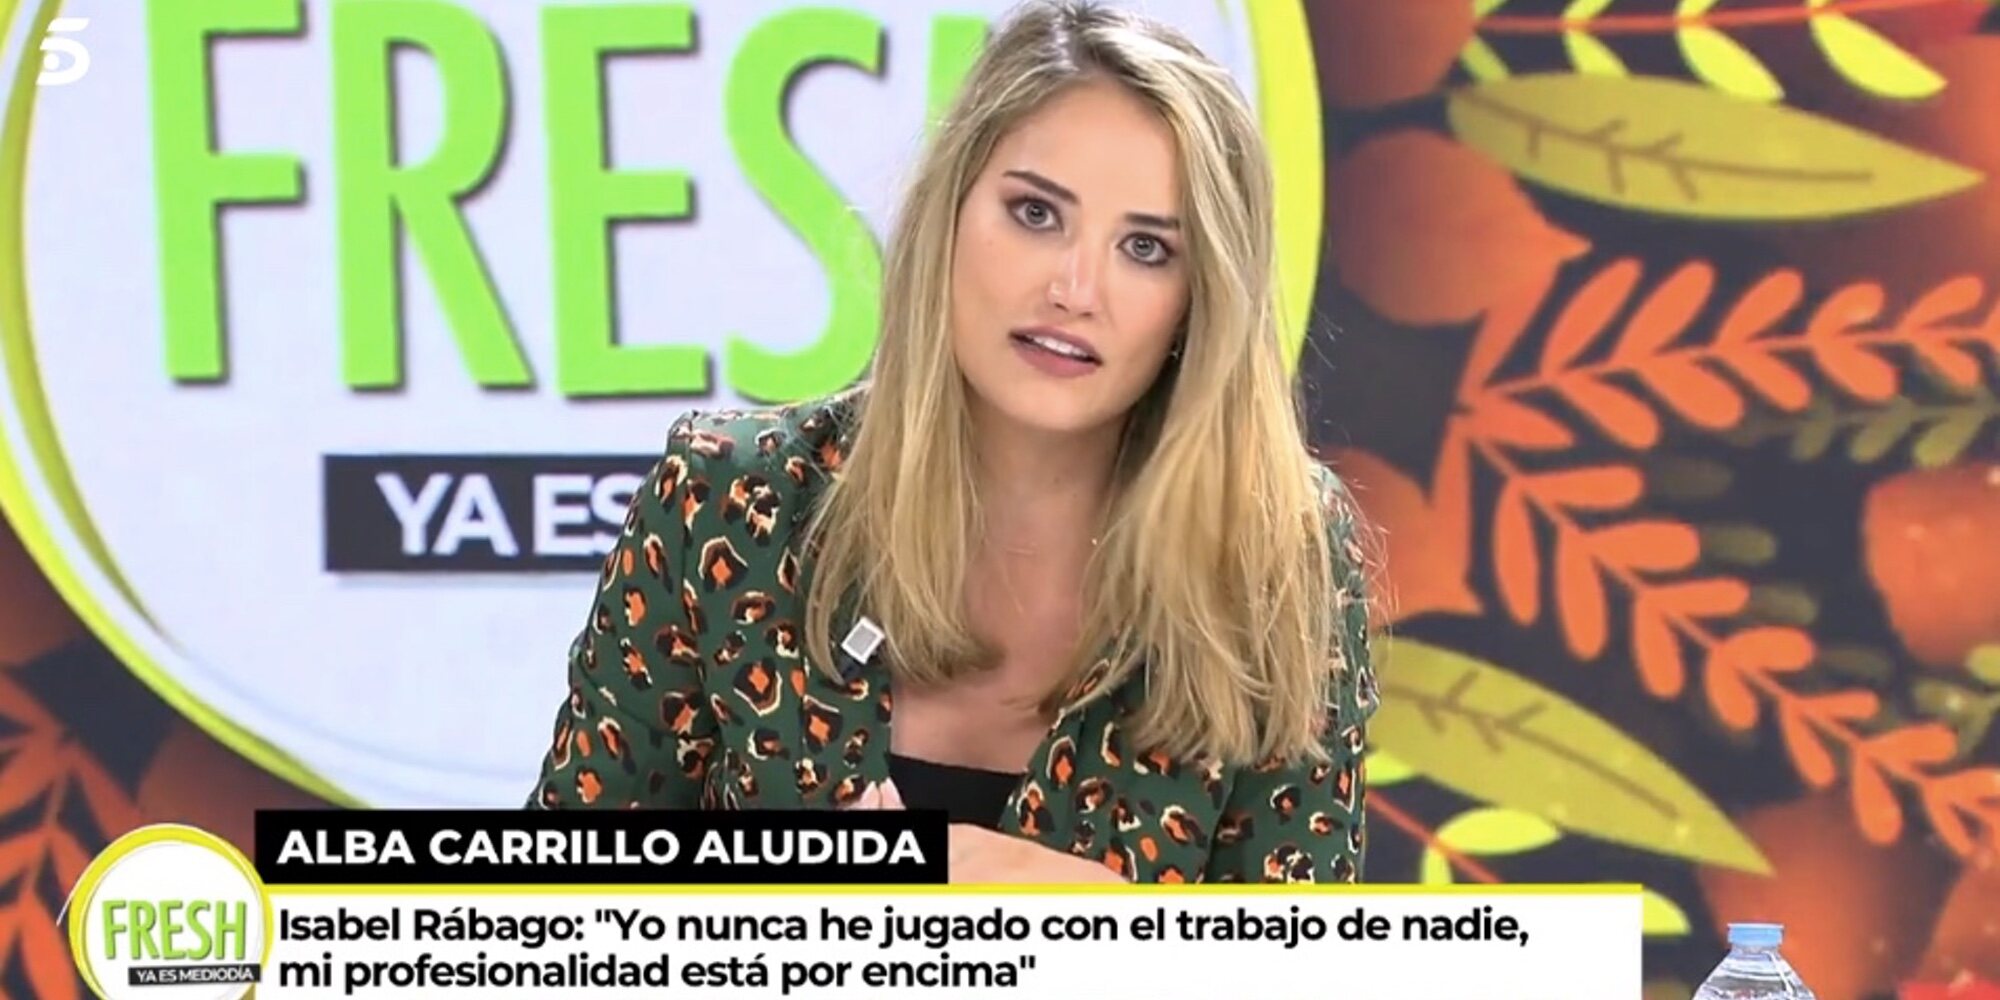 La guerra entre Alba Carrillo e Isabel Rábago: "No vengas con puñales porque yo voy a mordiscos"